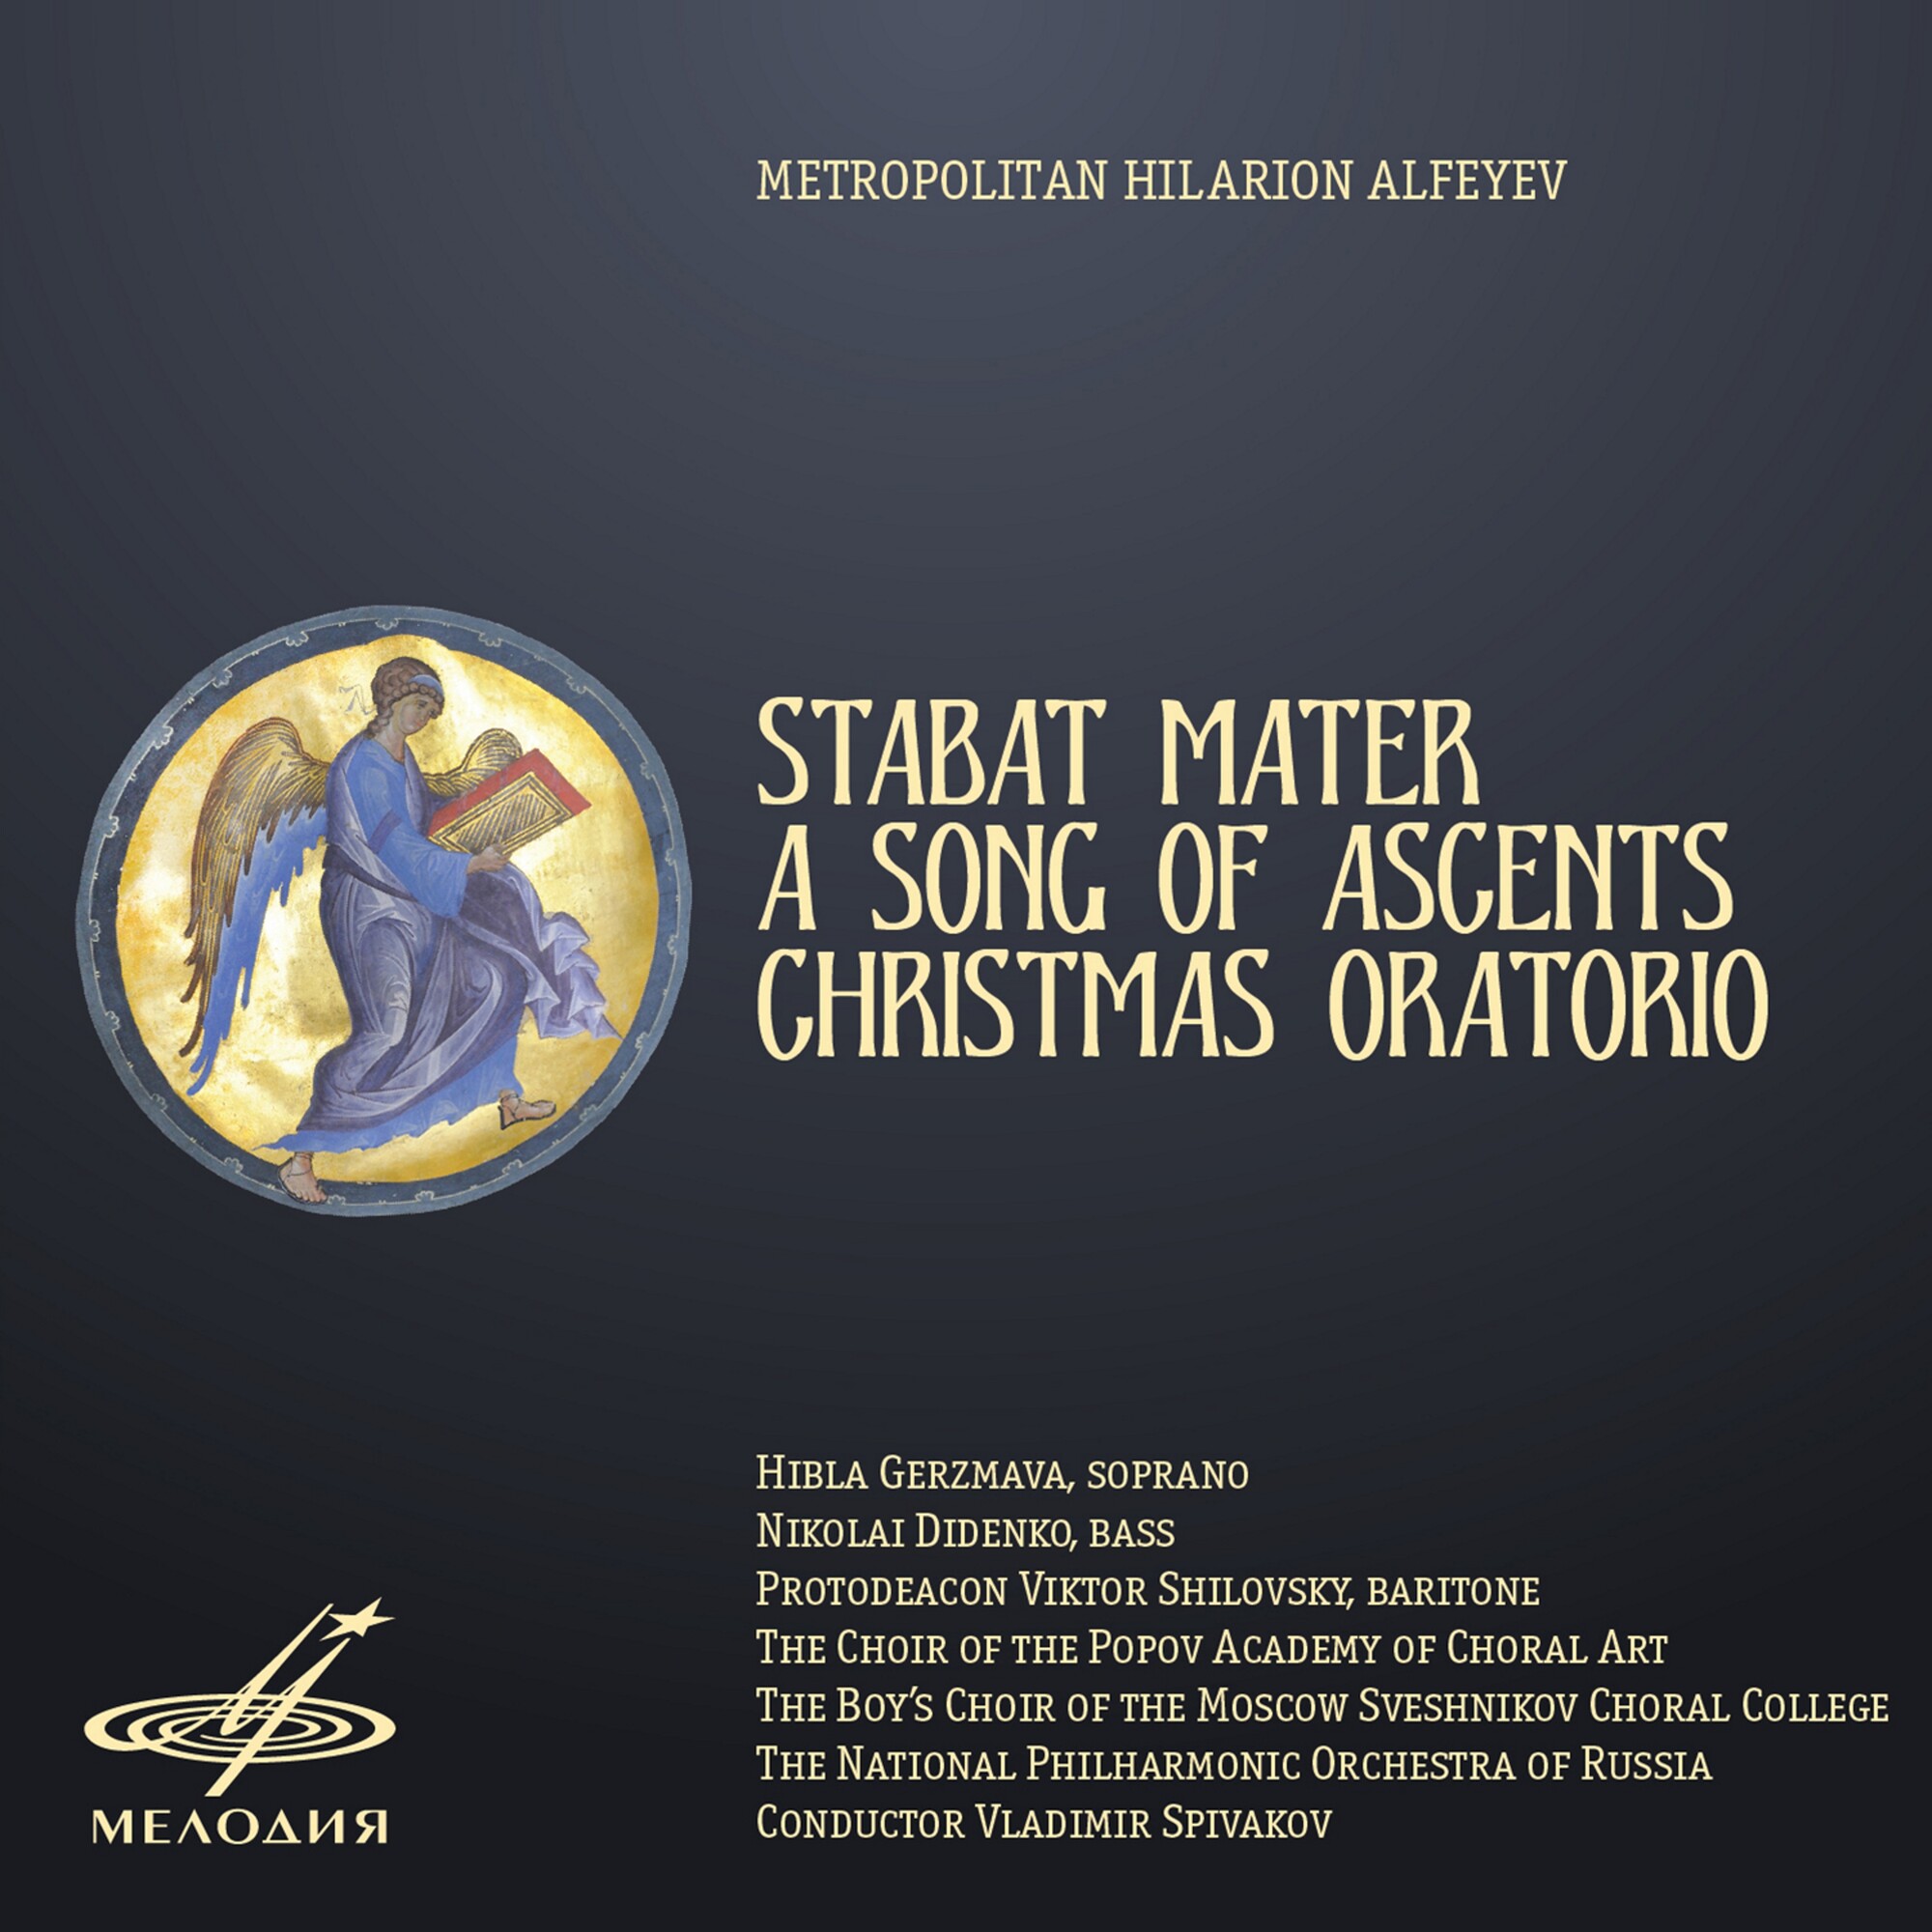 Митрополит Иларион Алфеев: Stabat Mater, Песнь Восхождения и Рождественская оратория